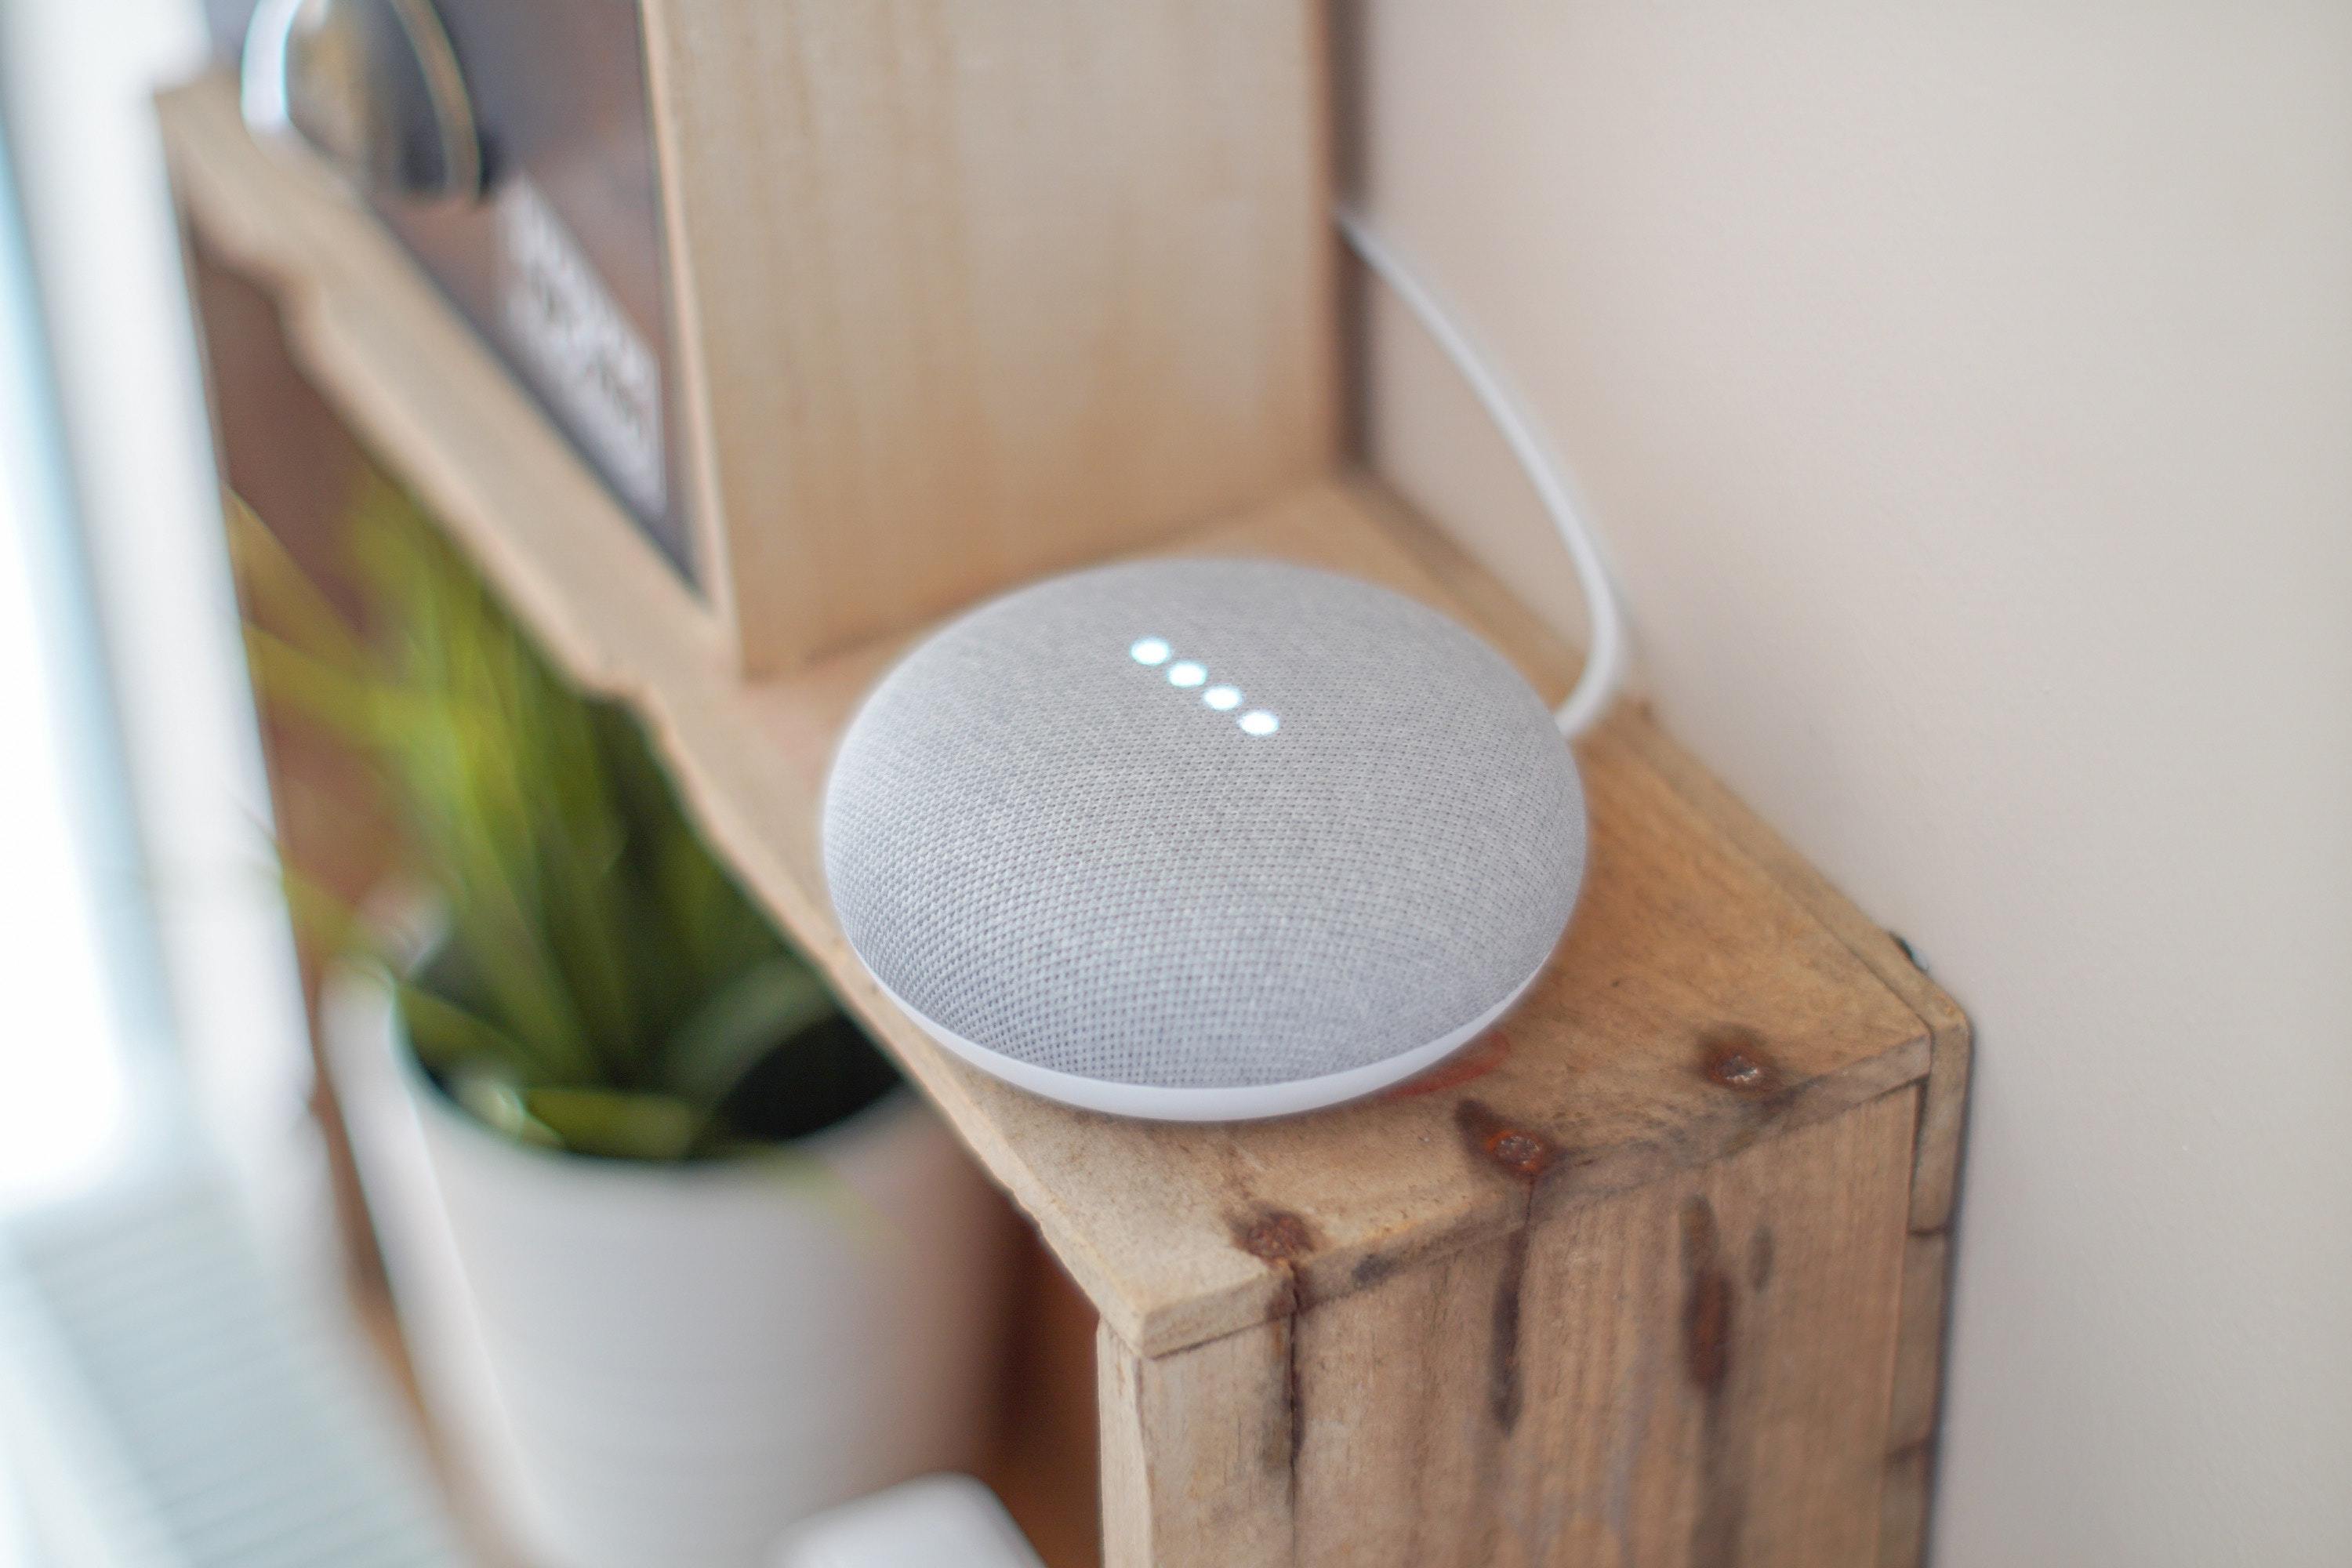 A grey smart speaker on a wood shelf